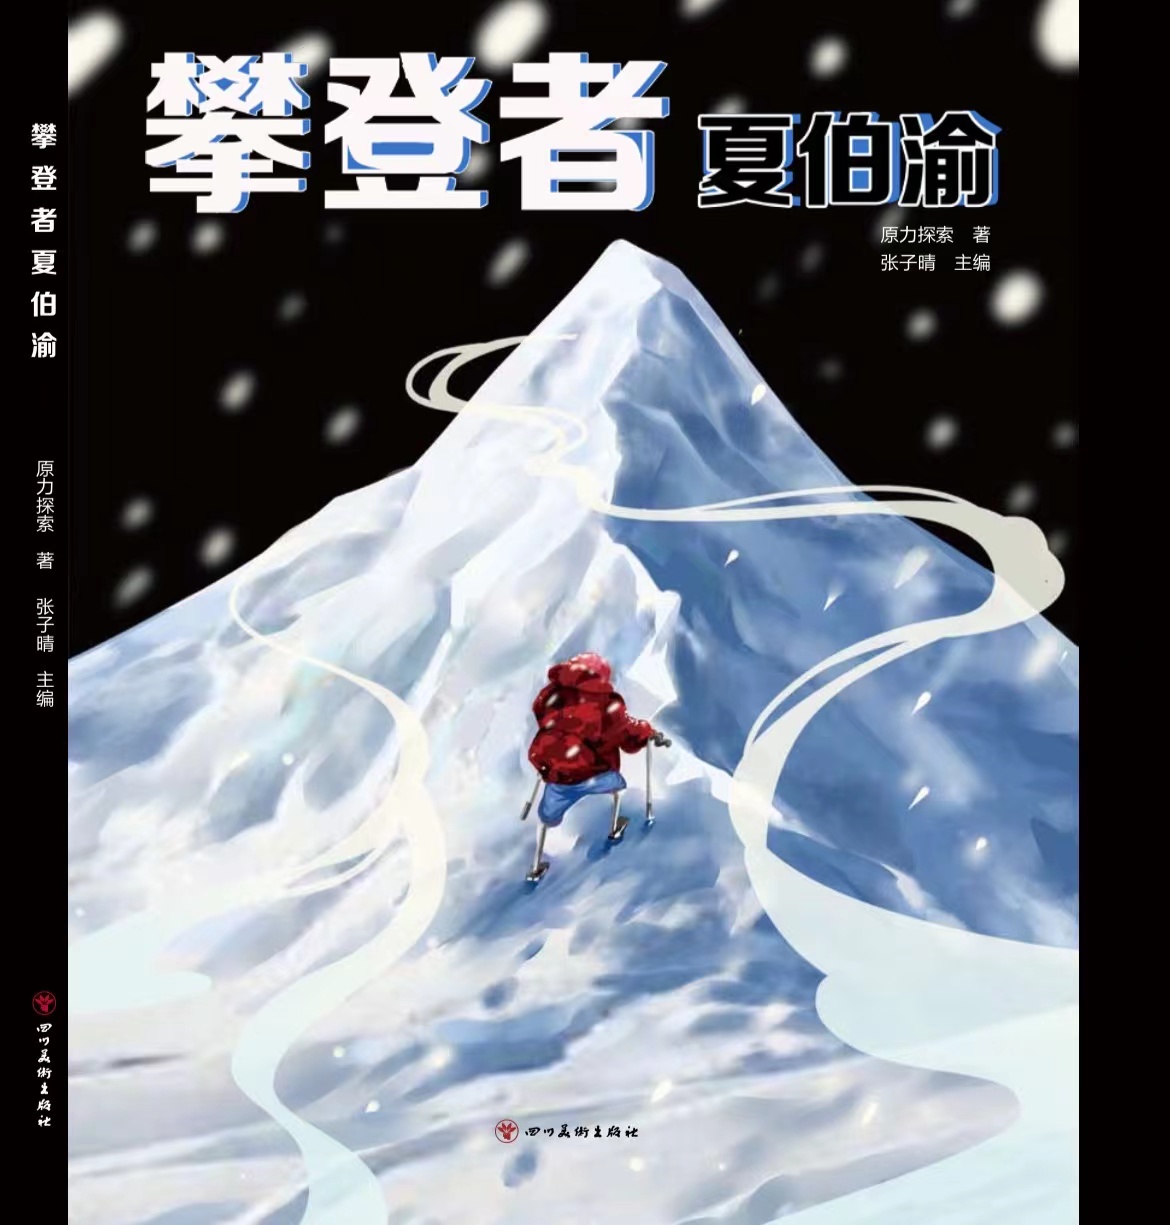 张子晴《攀登者夏伯渝》，一本让你有梦想的书